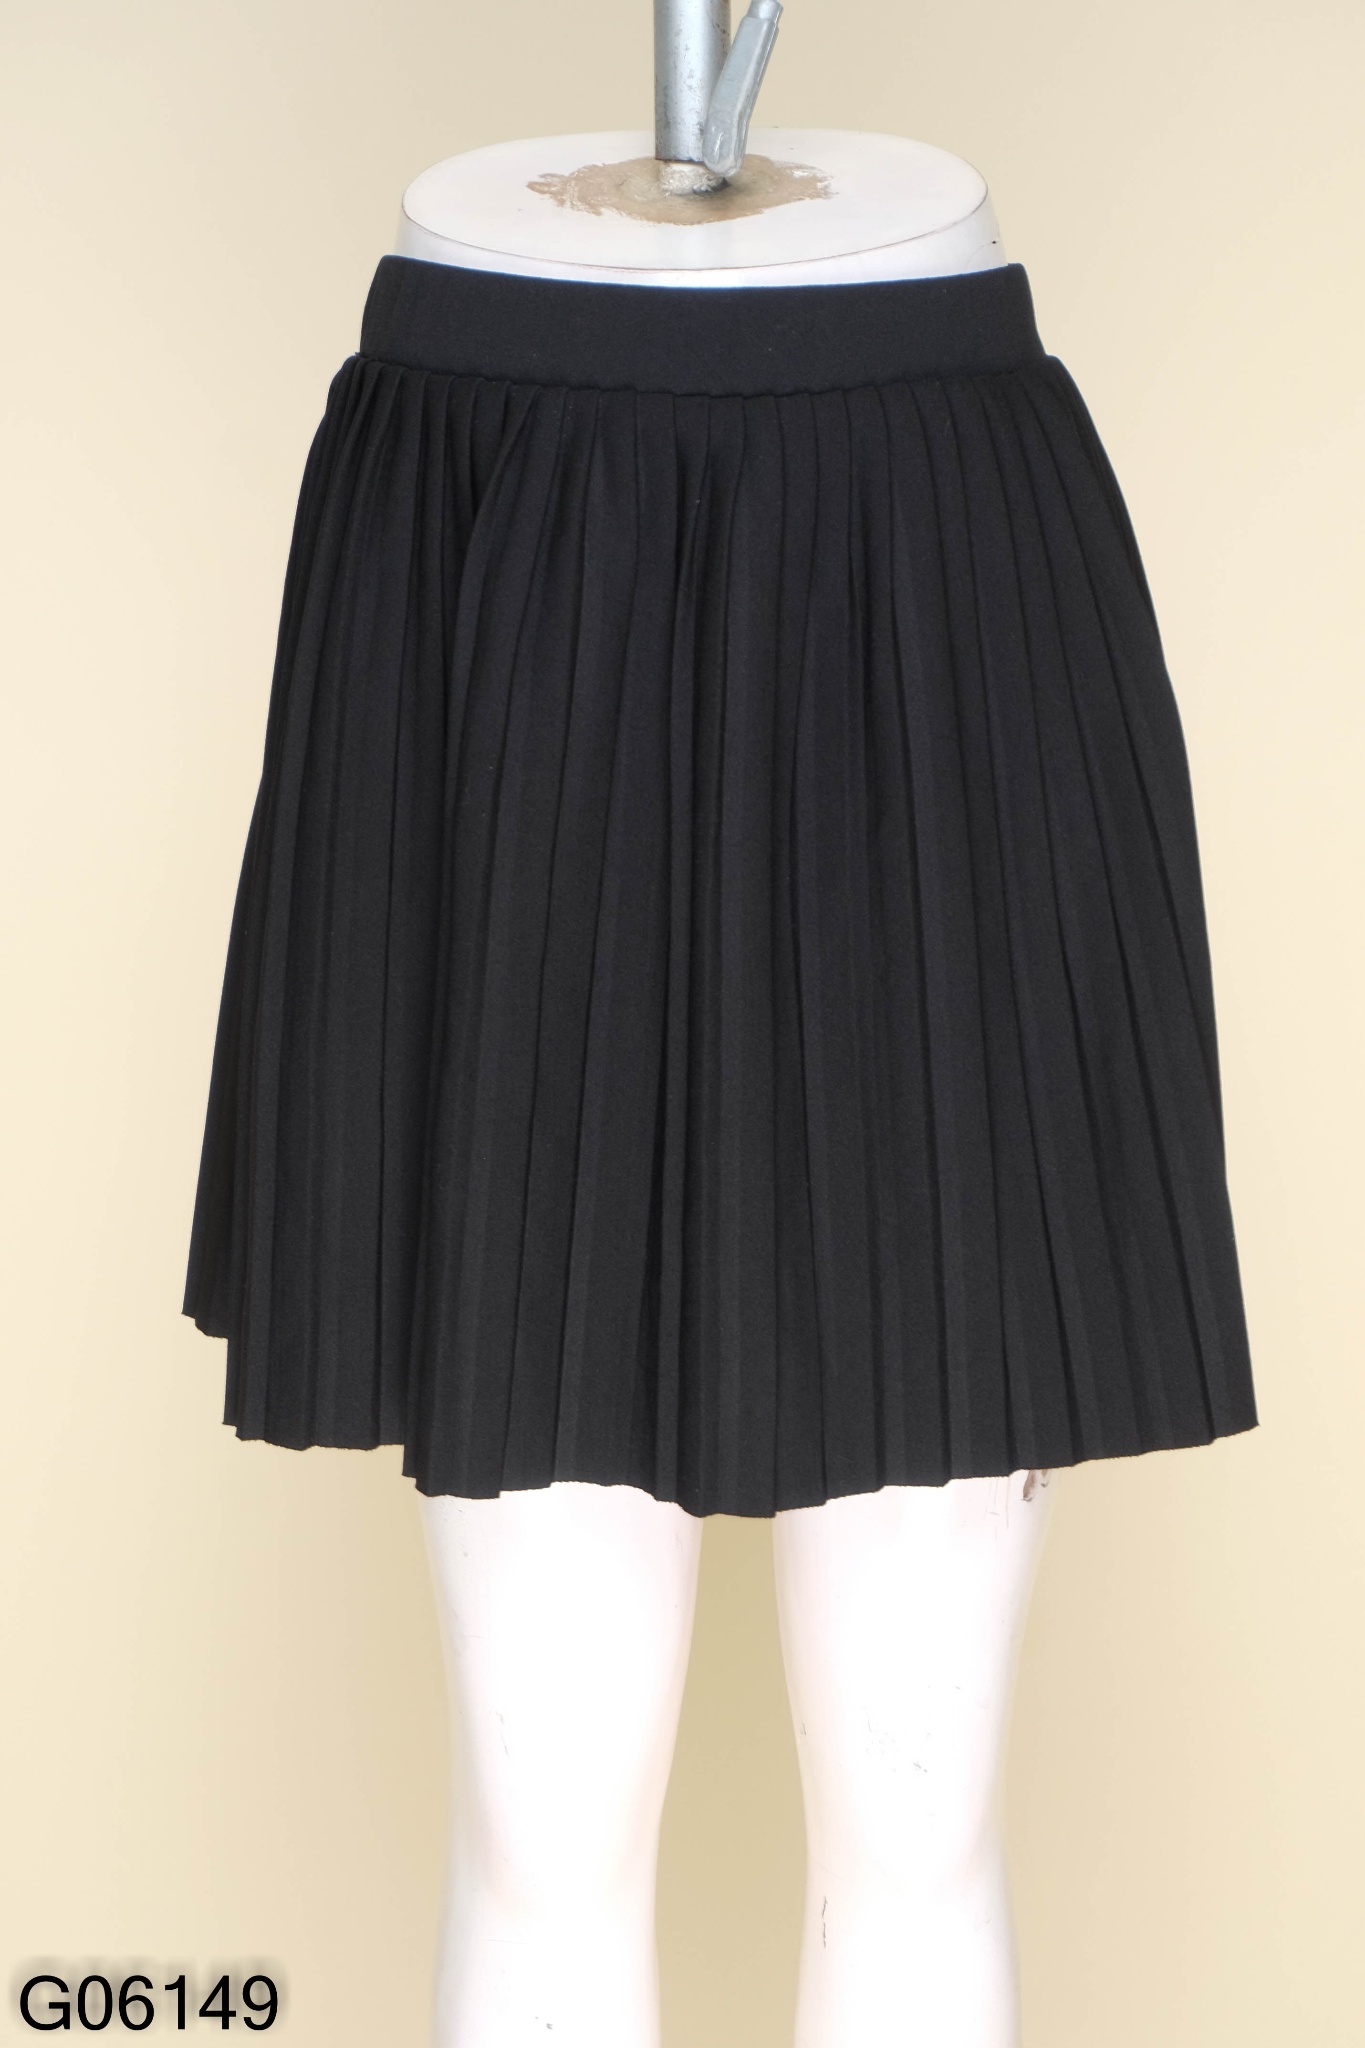 Hoàn tiền 25%] Chân váy xoè xếp ly tennis skirt - ngắn -lưng cao đen nâu  trắng - vải đẹp tuyết mưa cao cấp dễ thương cá tính | Lazada.vn